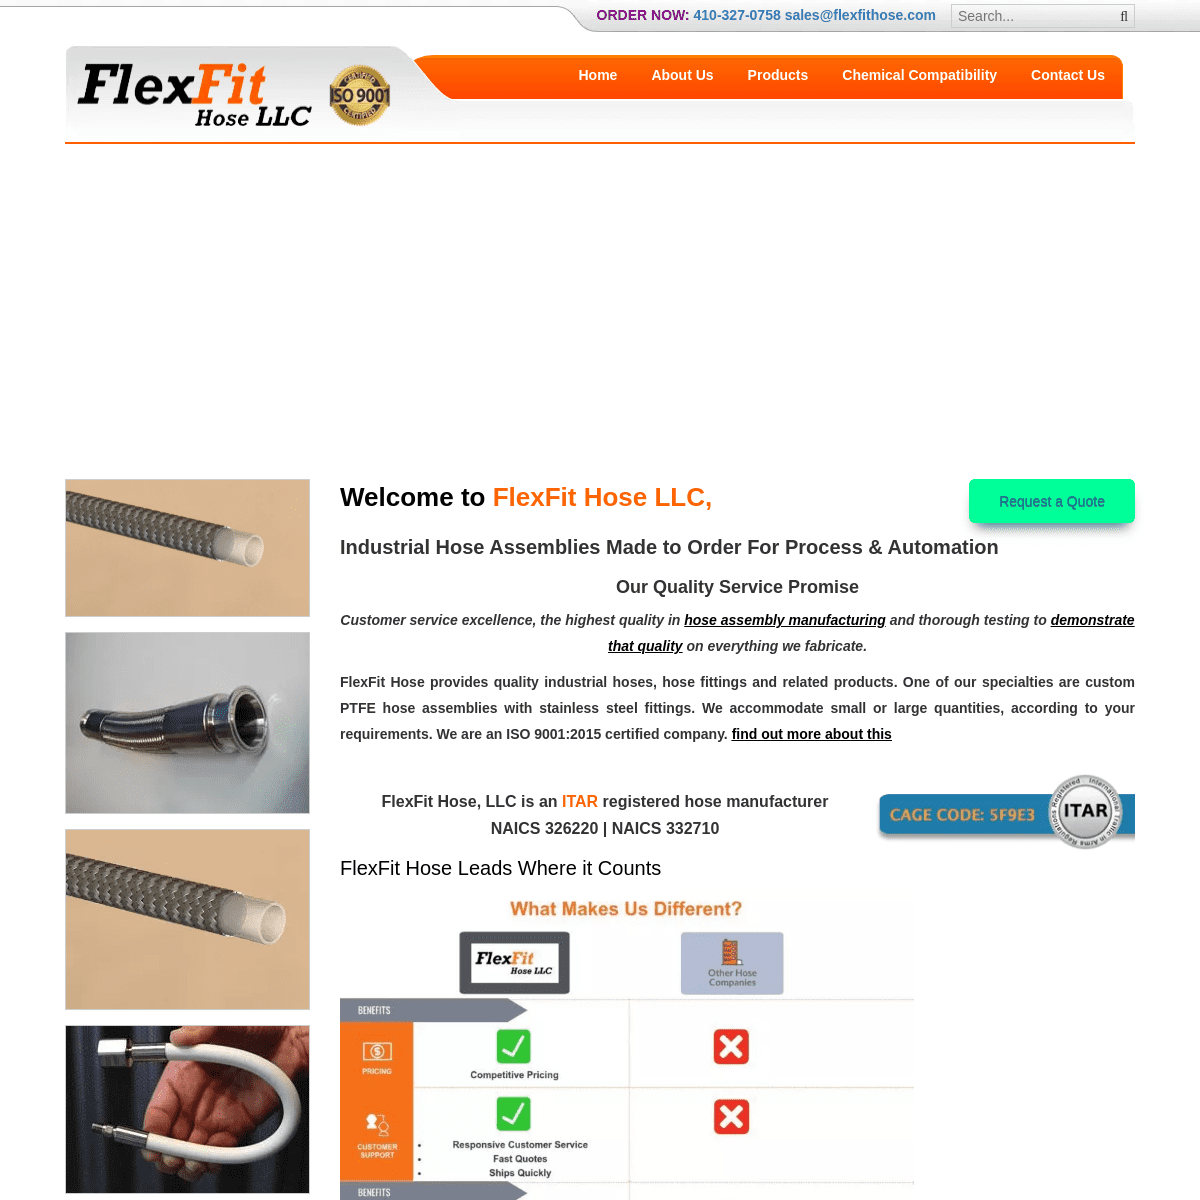 A complete backup of https://flexfithose.com